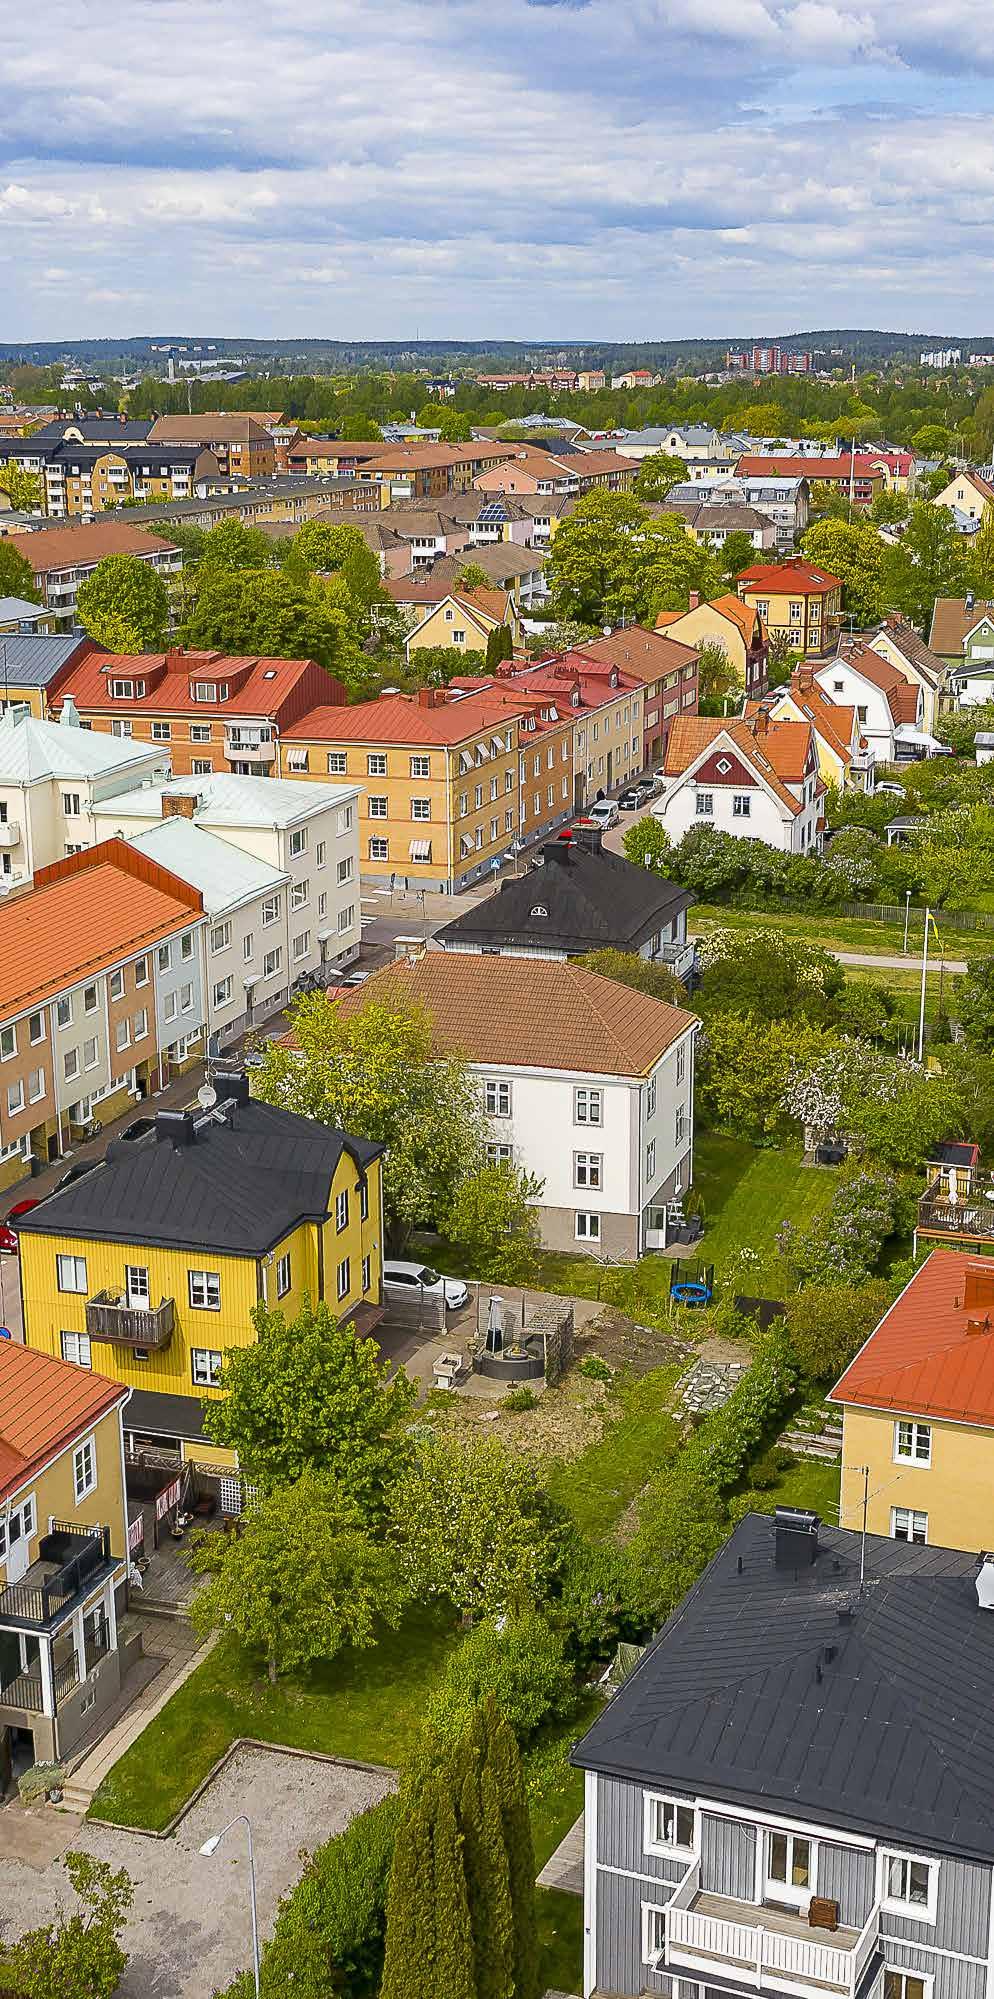 Bostadsmarknaden BEFOLKNINGSUTVECKLING Karlstad är en tillväxtort med stark befolkningstillväxt. Under de senaste 10 åren har folkmängden ökat med i genomsnitt 747 invånare per år.